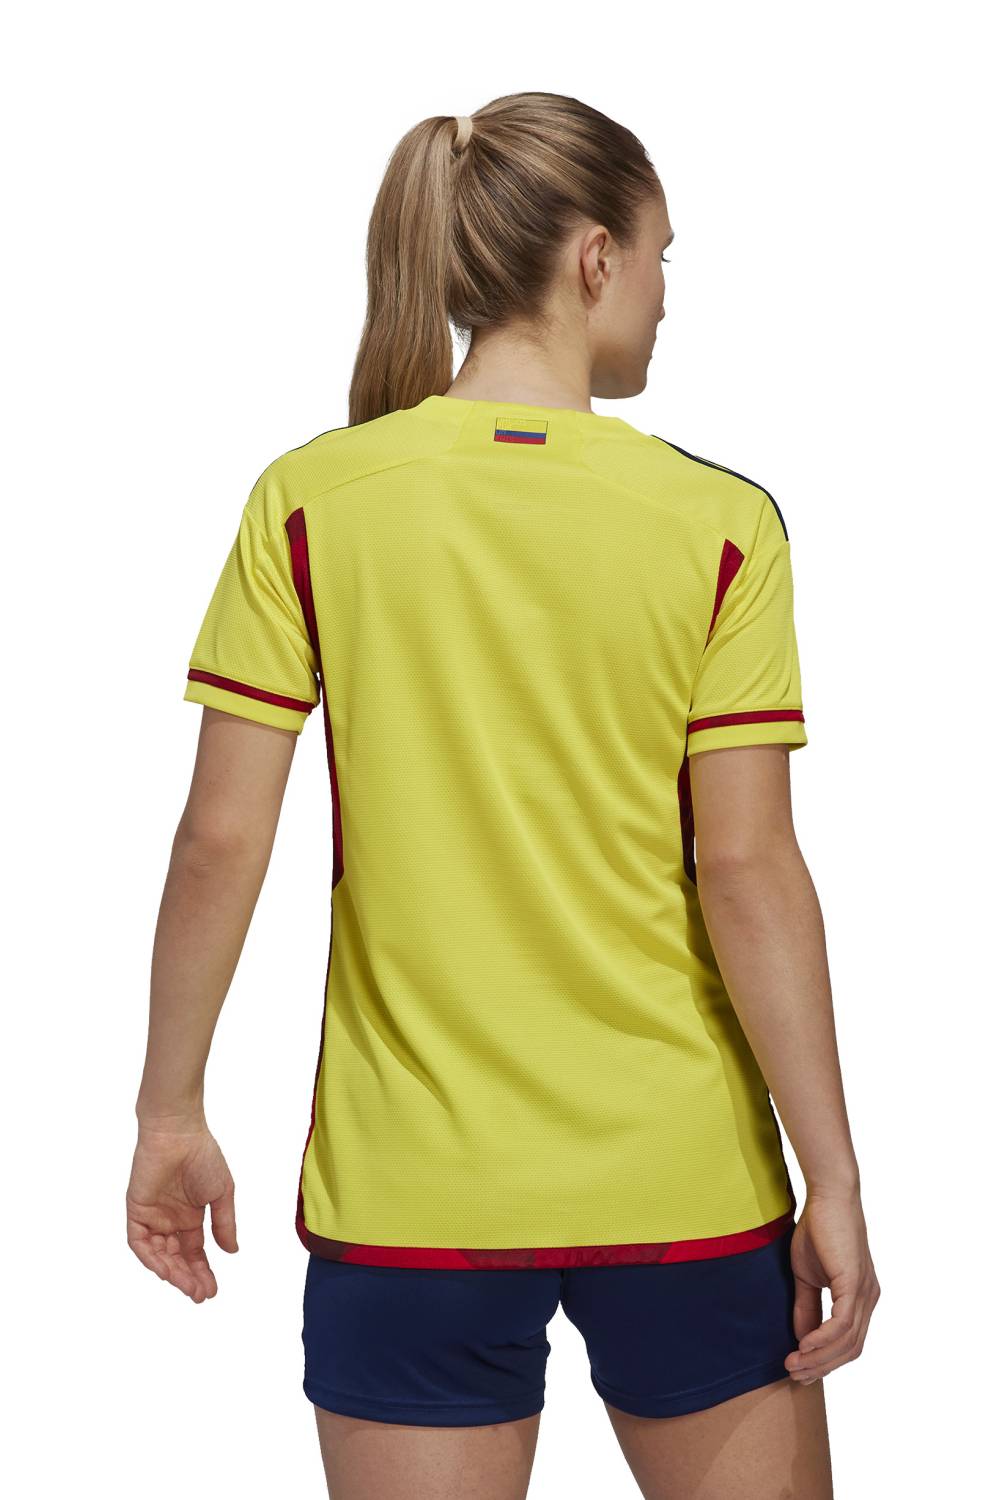 ADIDAS - Camiseta De Fútbol Colombia Local Mujer Adidas